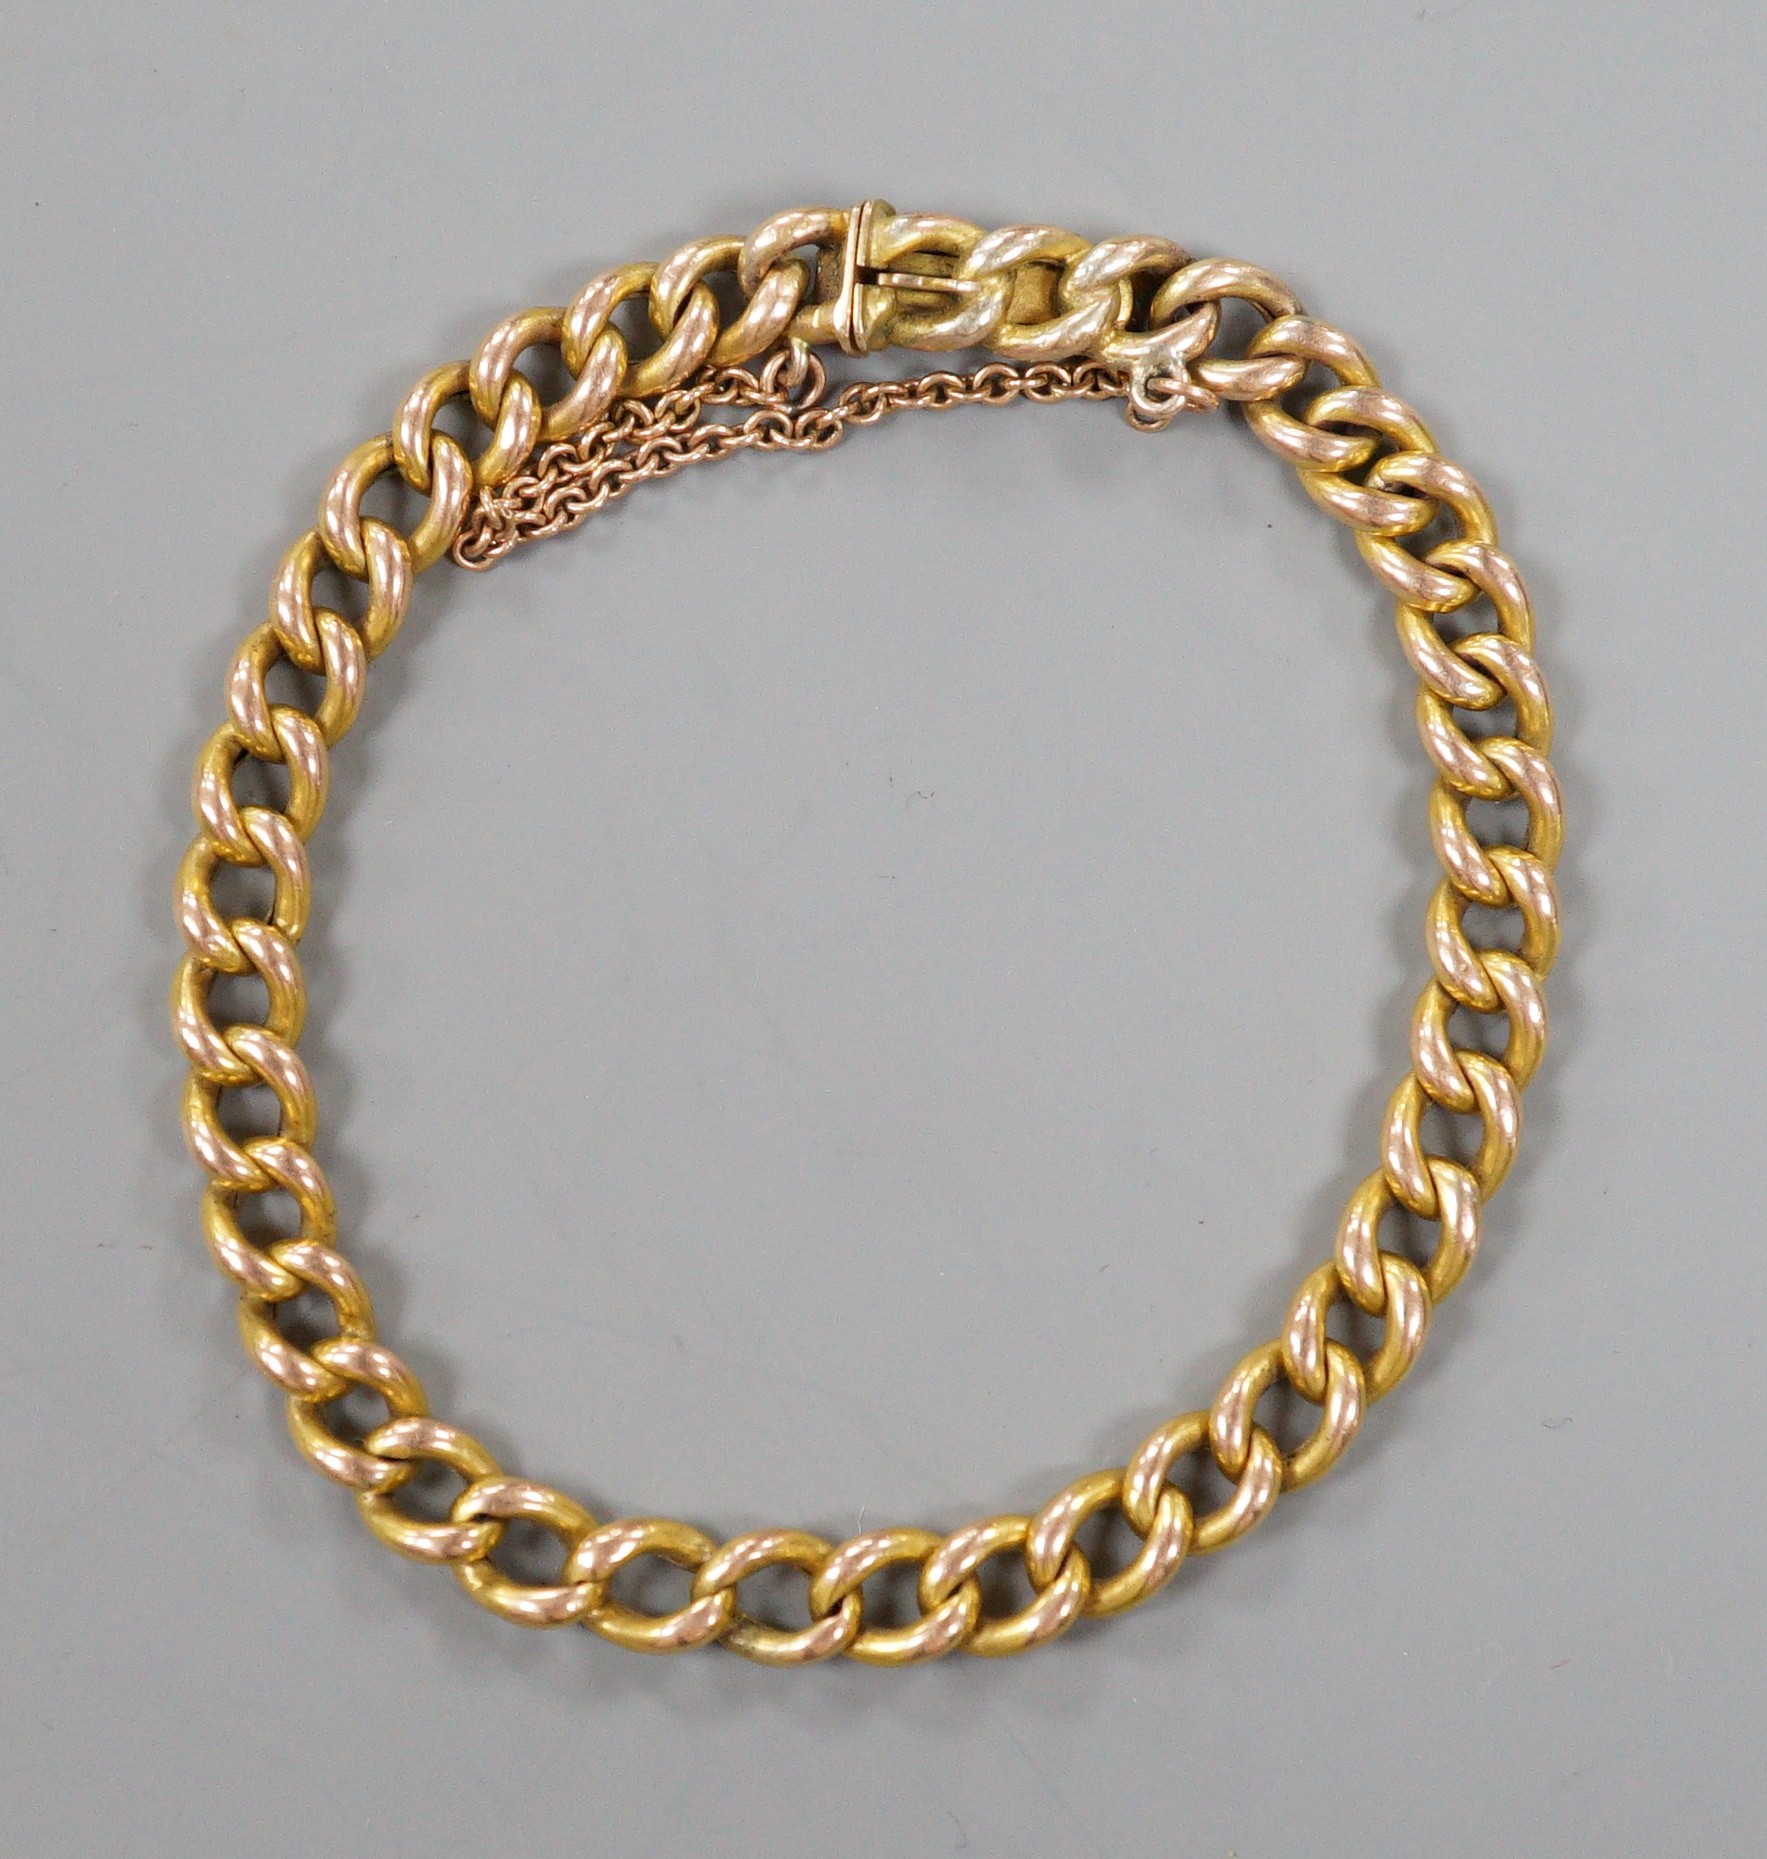 A 9ct curb link bracelet, 18cm, 7.5 grams.